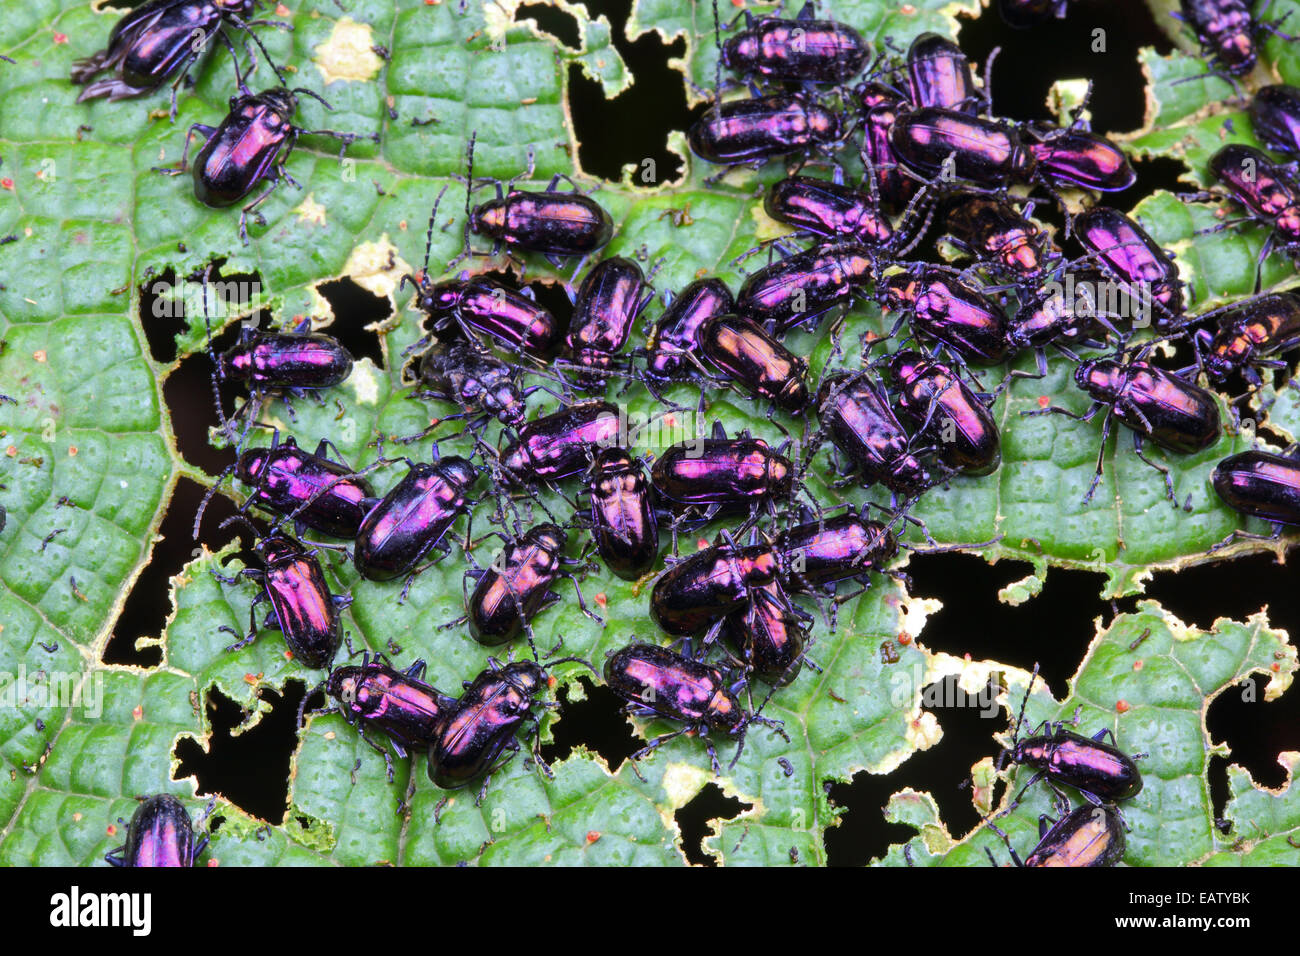 Un grand groupe de coléoptères pourpre qui se nourrit d'une feuille dans une forêt de nuage. Banque D'Images